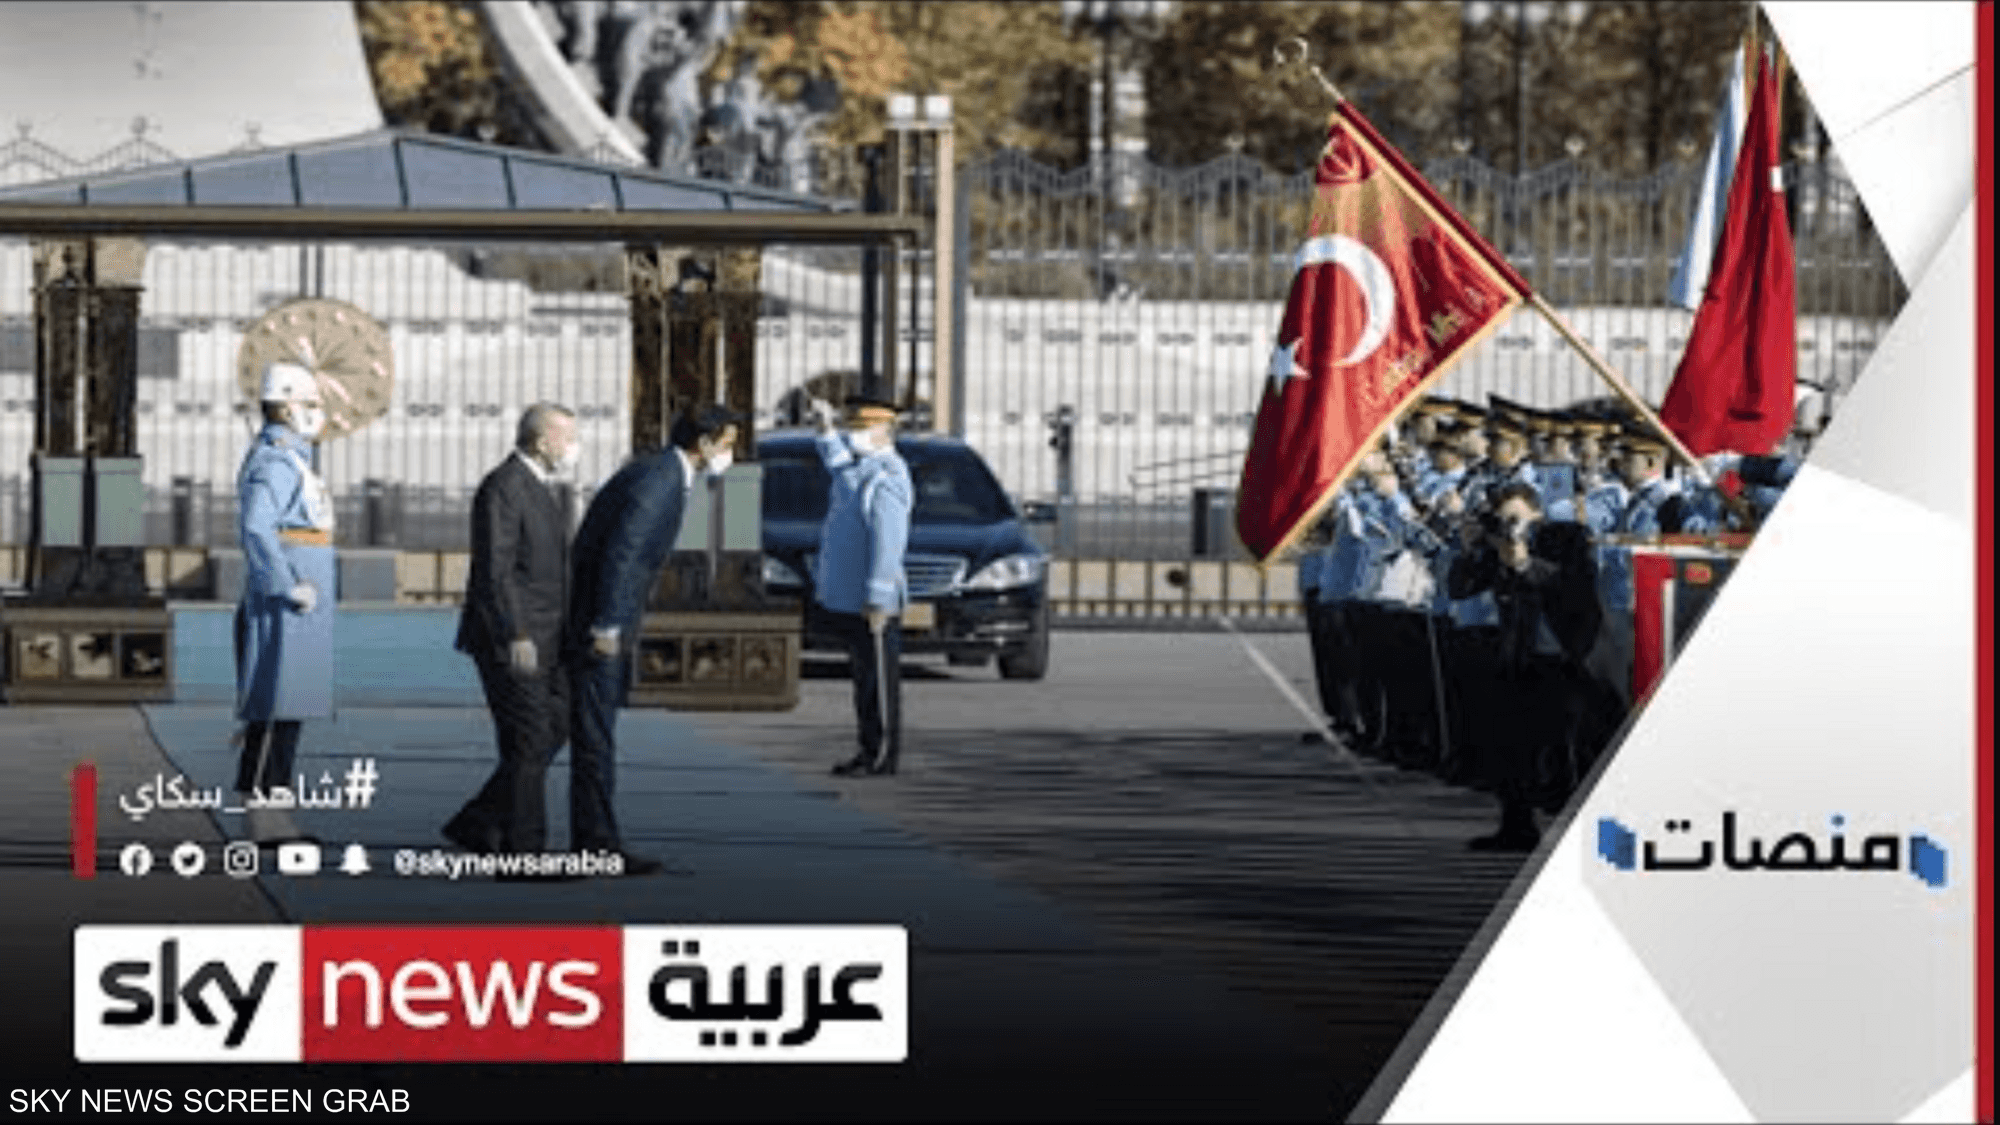 انحناءة أمير قطر قرب أردوغان تثير جدلا على مواقع التواصل